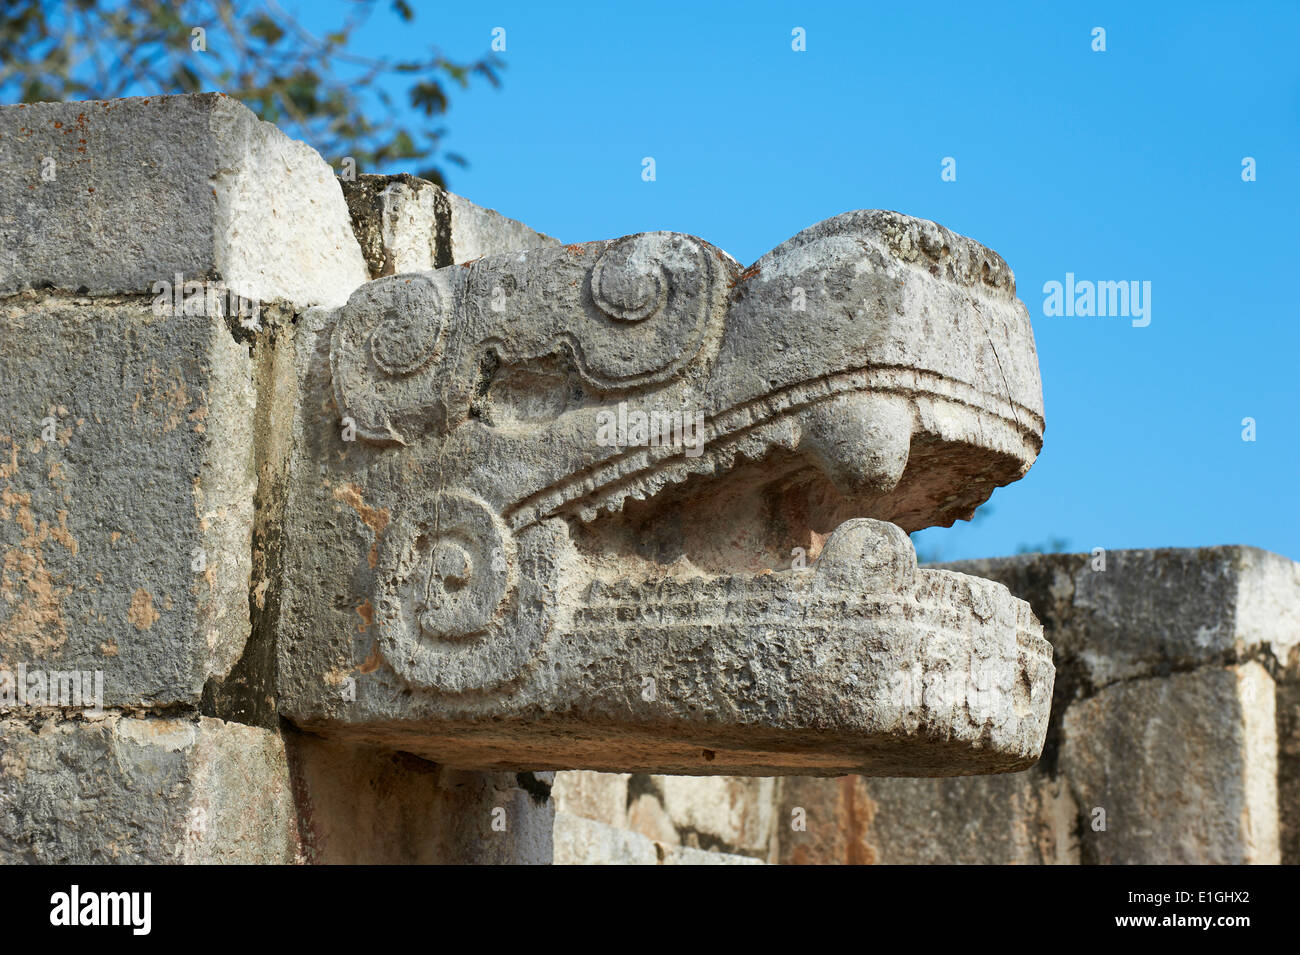 Mexiko, Yucatan-Zustand, archäologische Stätte Chichen Itza, Weltkulturerbe der UNESCO, der Schlangenkopf, Maya-Ruinen Stockfoto